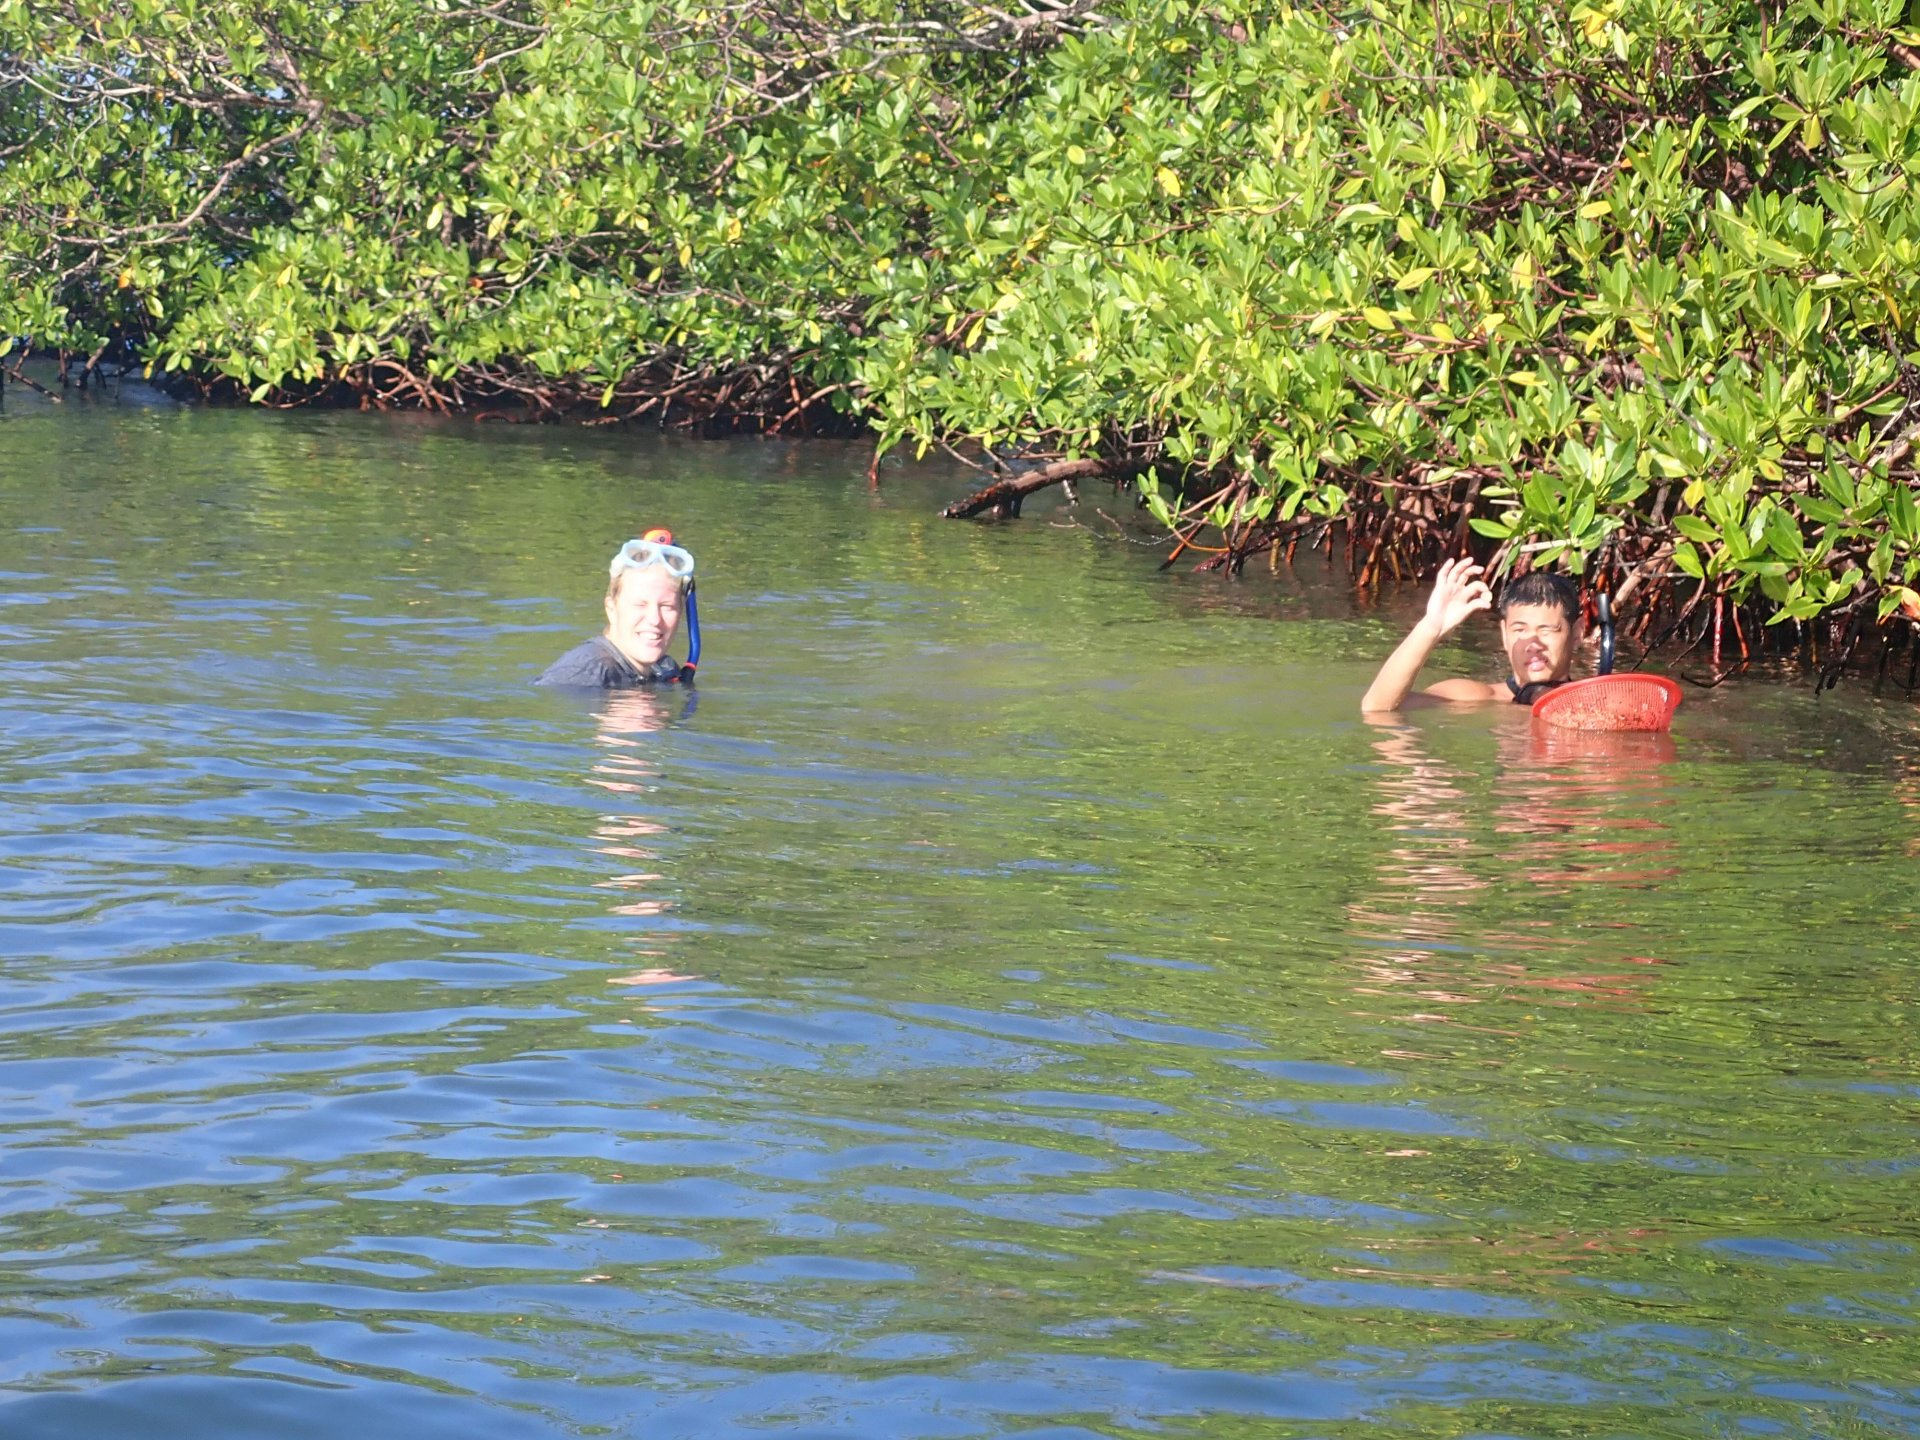 Laetitia Wilkins and Benedict Yuen sampling clams in Bocas del Toro, Panama in a Mangrove habitat. (© Jonathan Eisen)